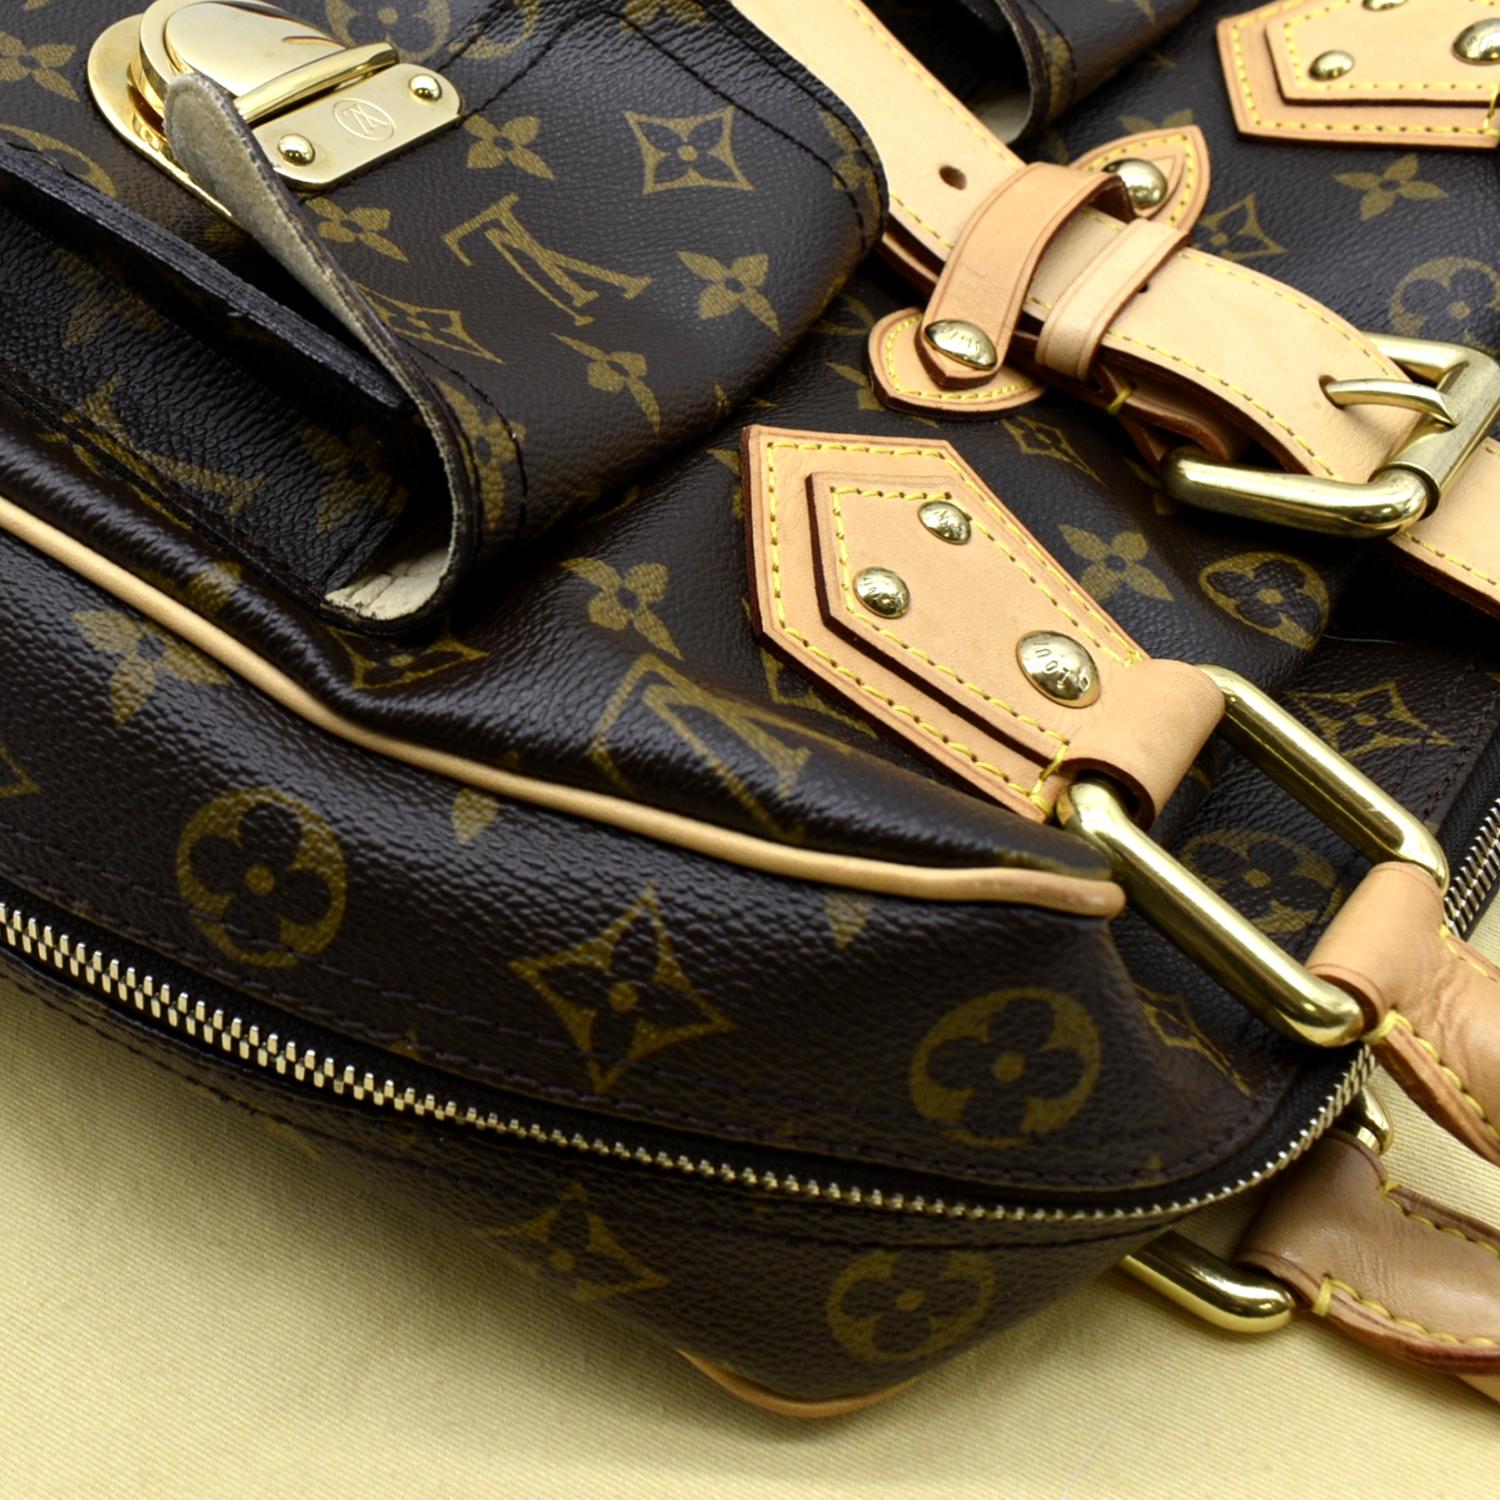 Manhattan cloth handbag Louis Vuitton Brown in Cloth - 34716179